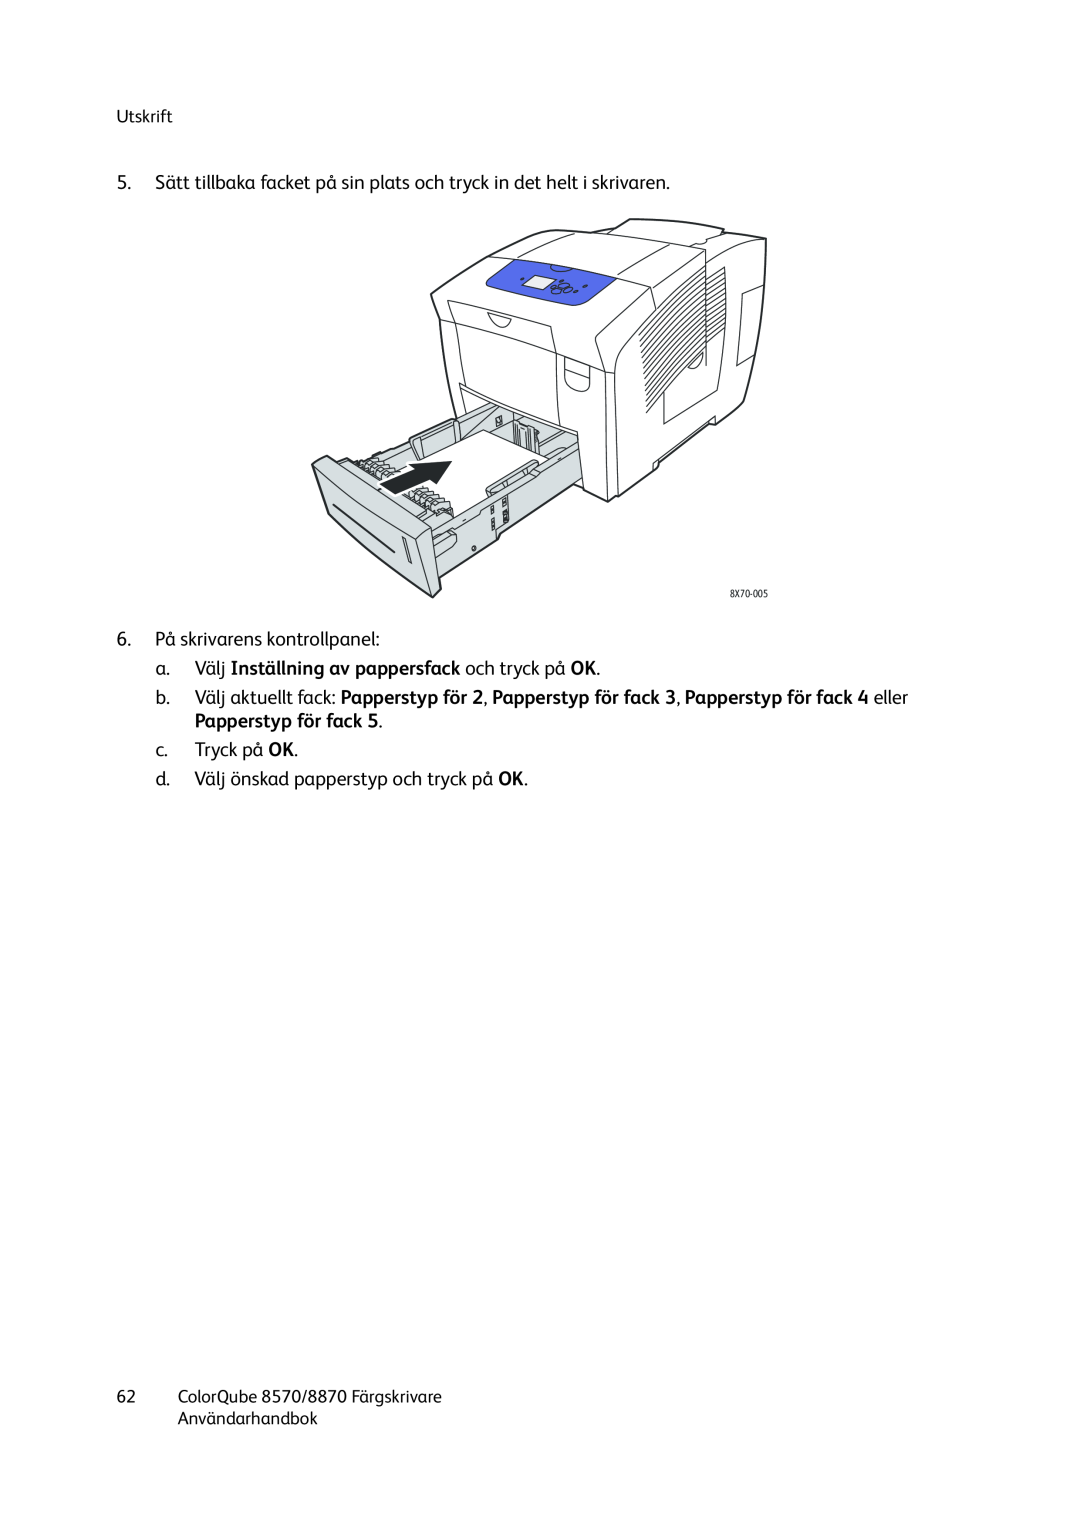 Xerox 8570 / 8870 manual a.Välj Inställning av pappersfack och tryck på OK, 6.På skrivarens kontrollpanel, c.Tryck på OK 